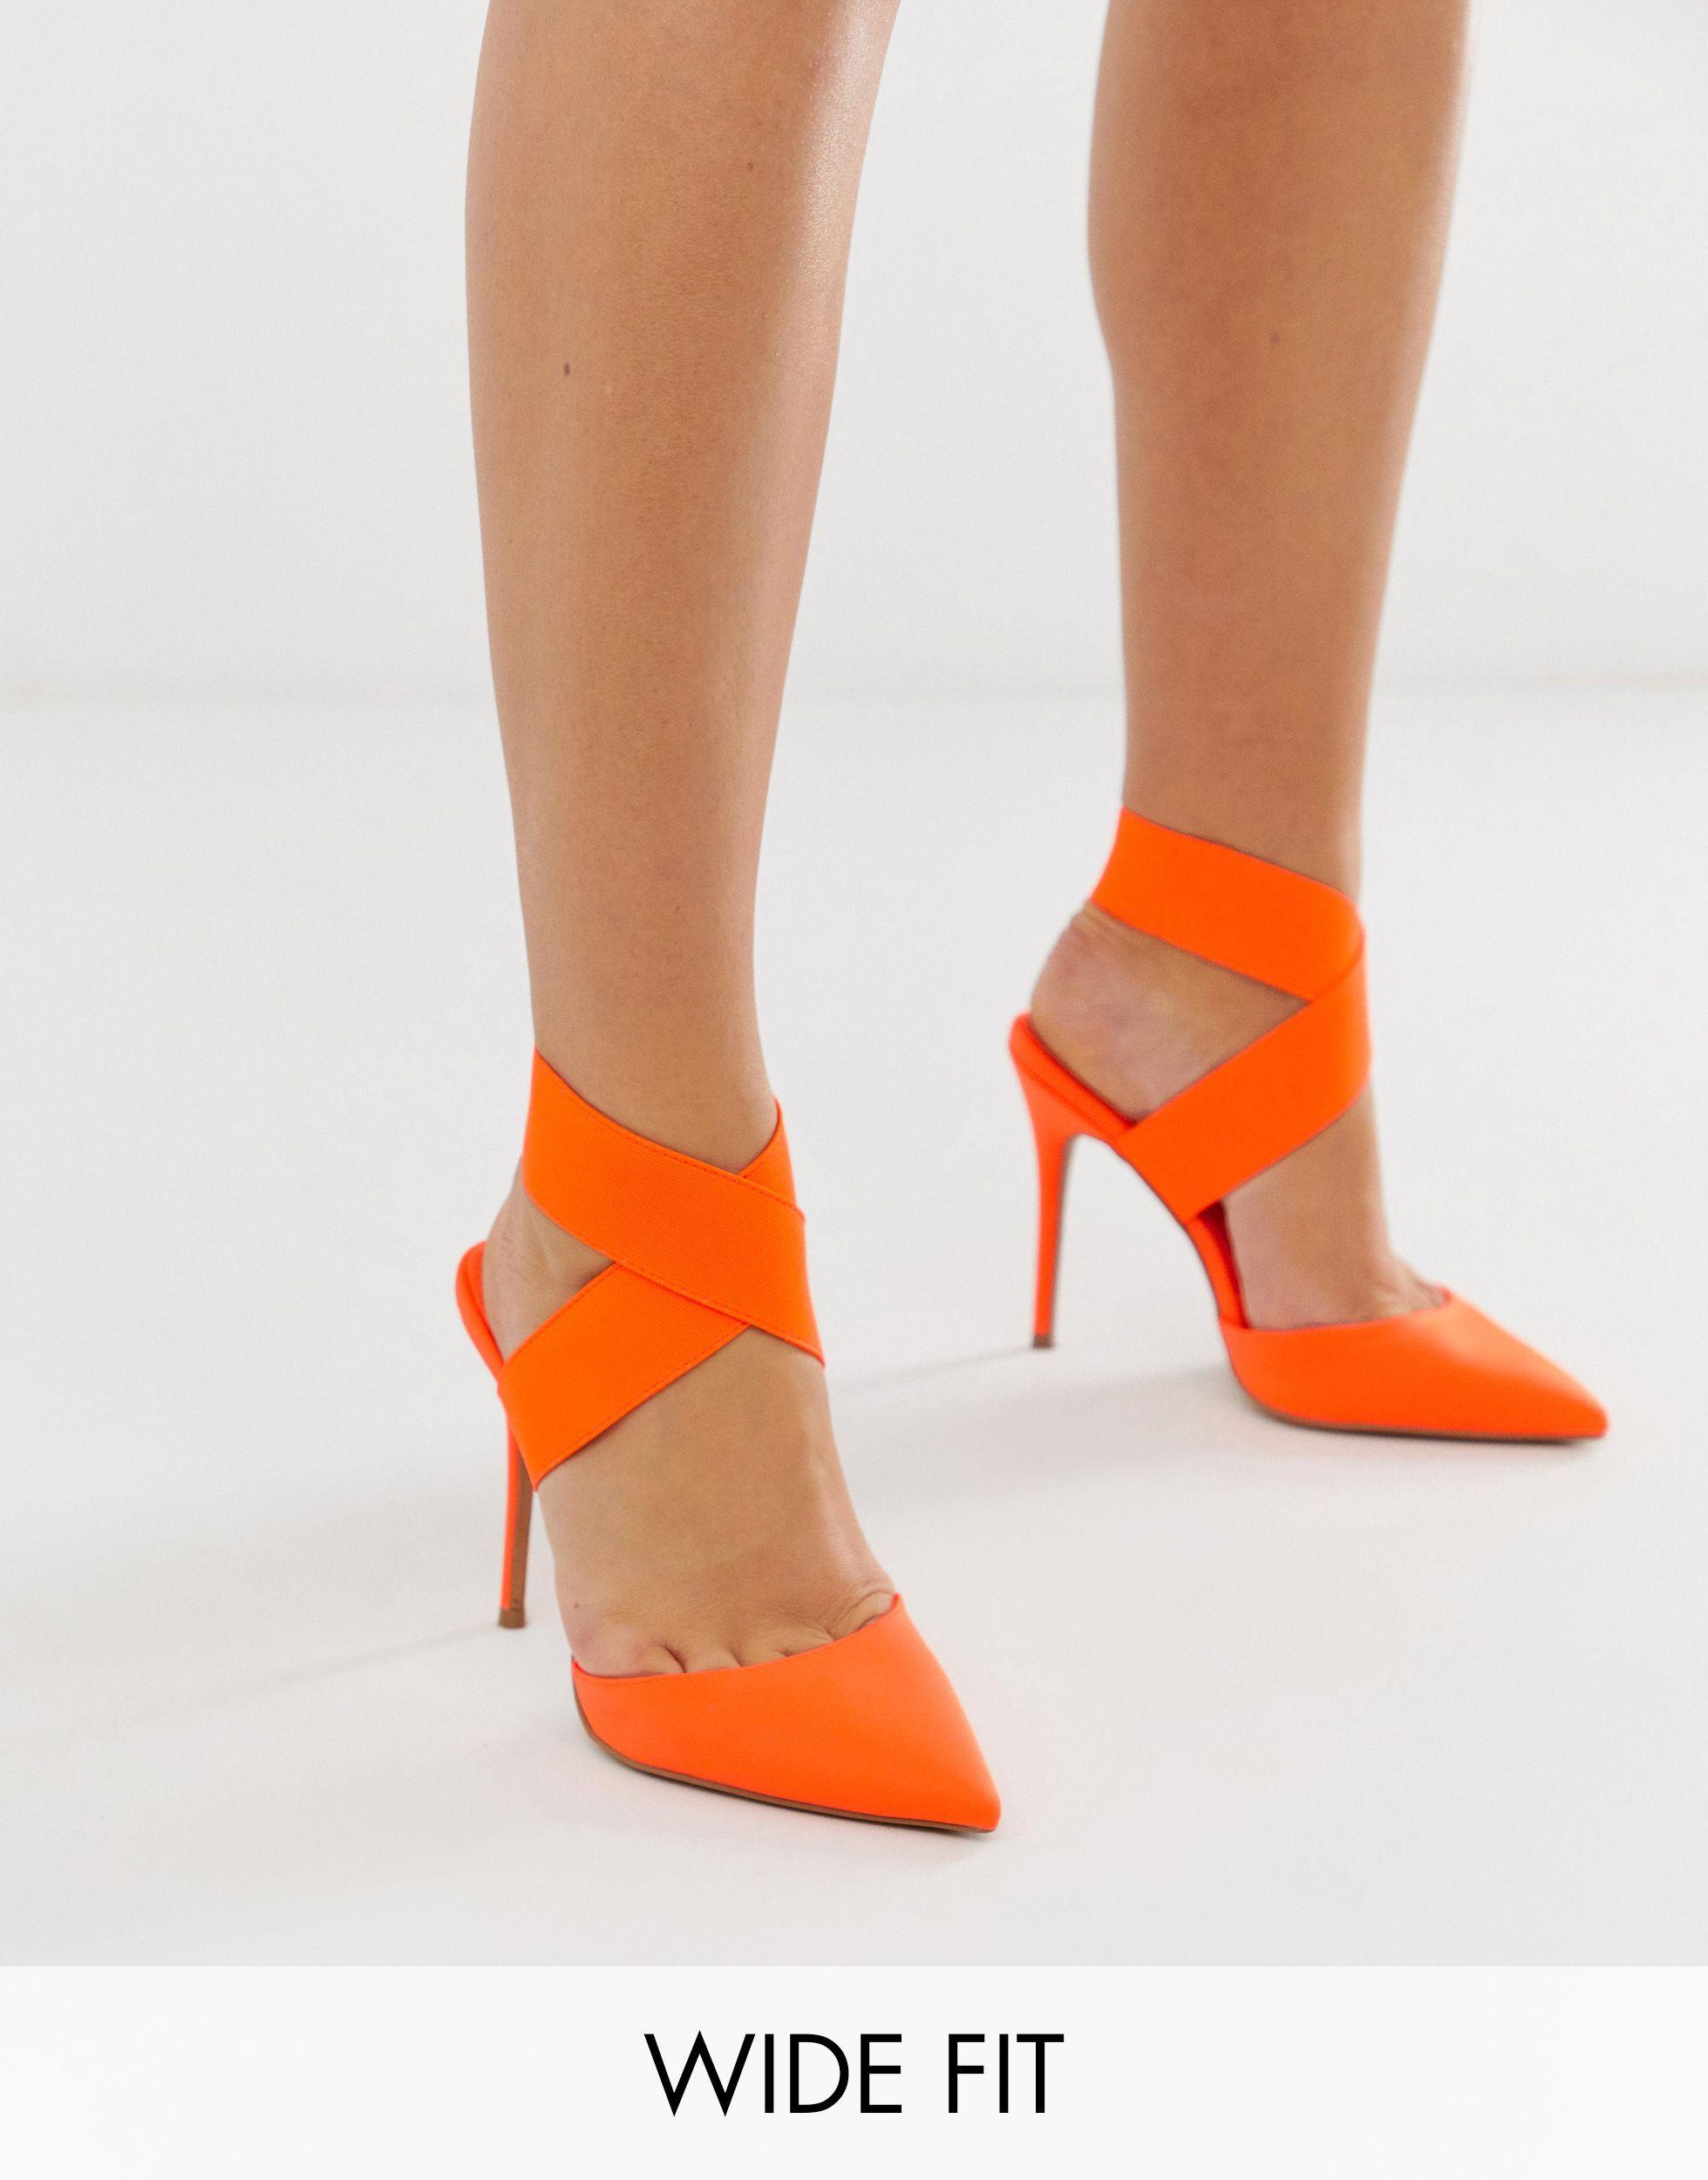 Buy > orange high heel > in stock